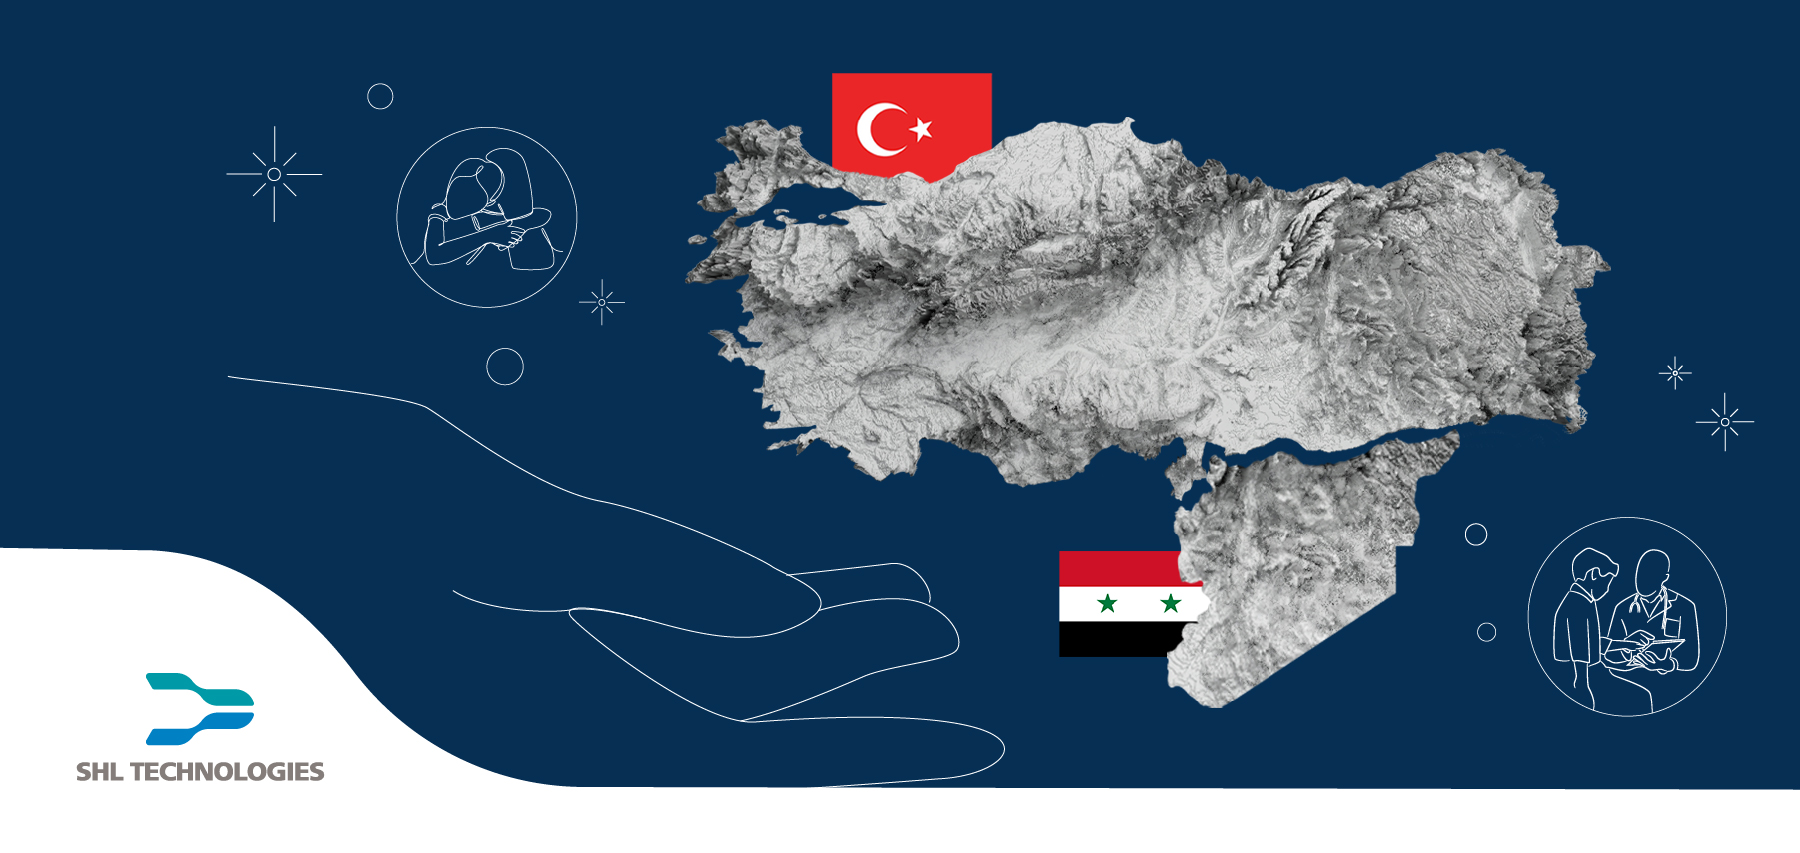 瑞健科技與瑞健醫療攜手共同捐助土耳其和敘利亞的抗震救災